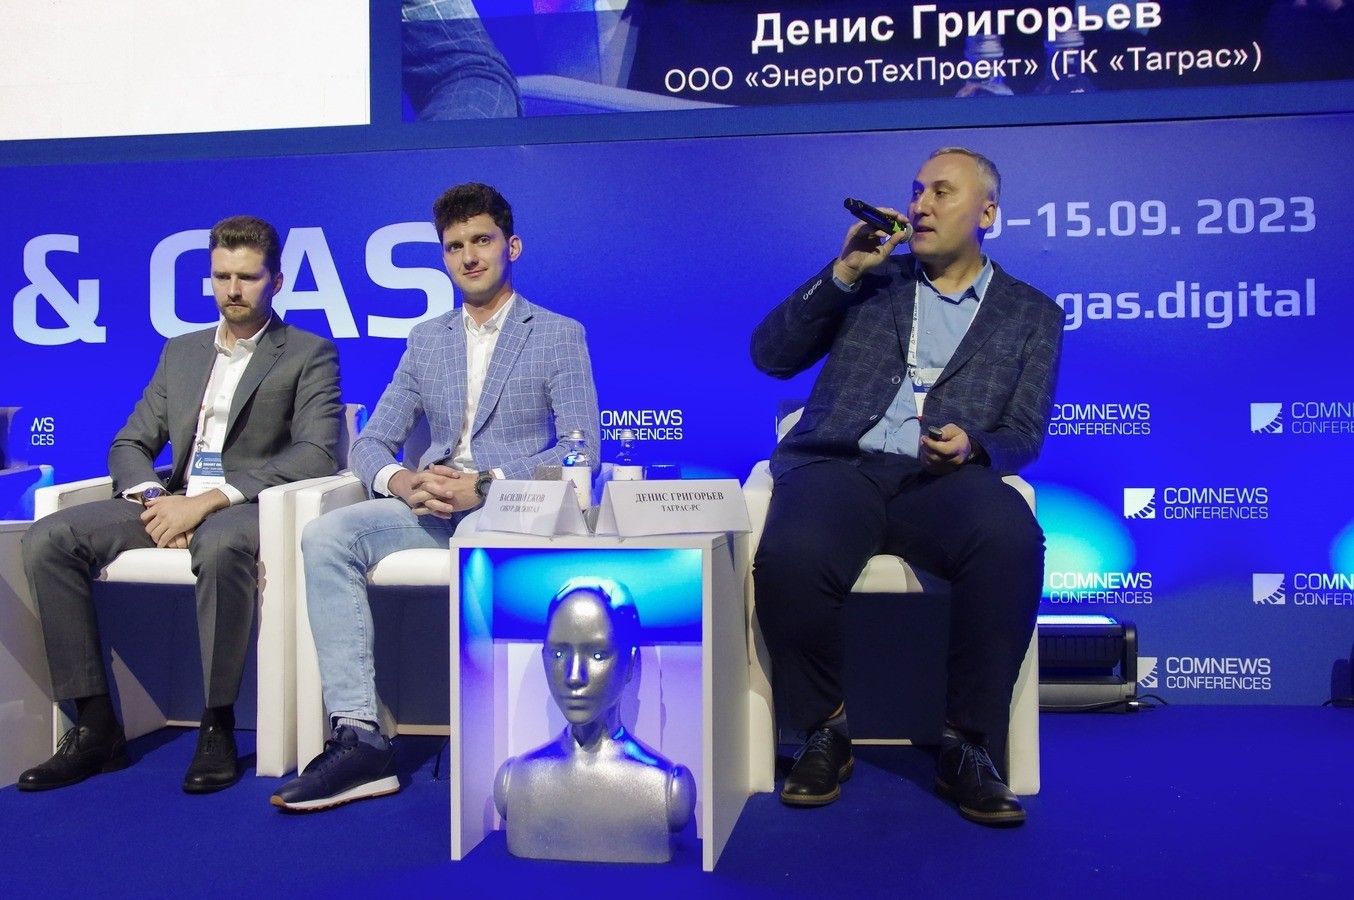 В Санкт-Петербурге прошел IX Федеральный форум по ИТ и цифровым технологиям нефтегазовой отрасли России Smart Oil & Gas 2023 - Новости